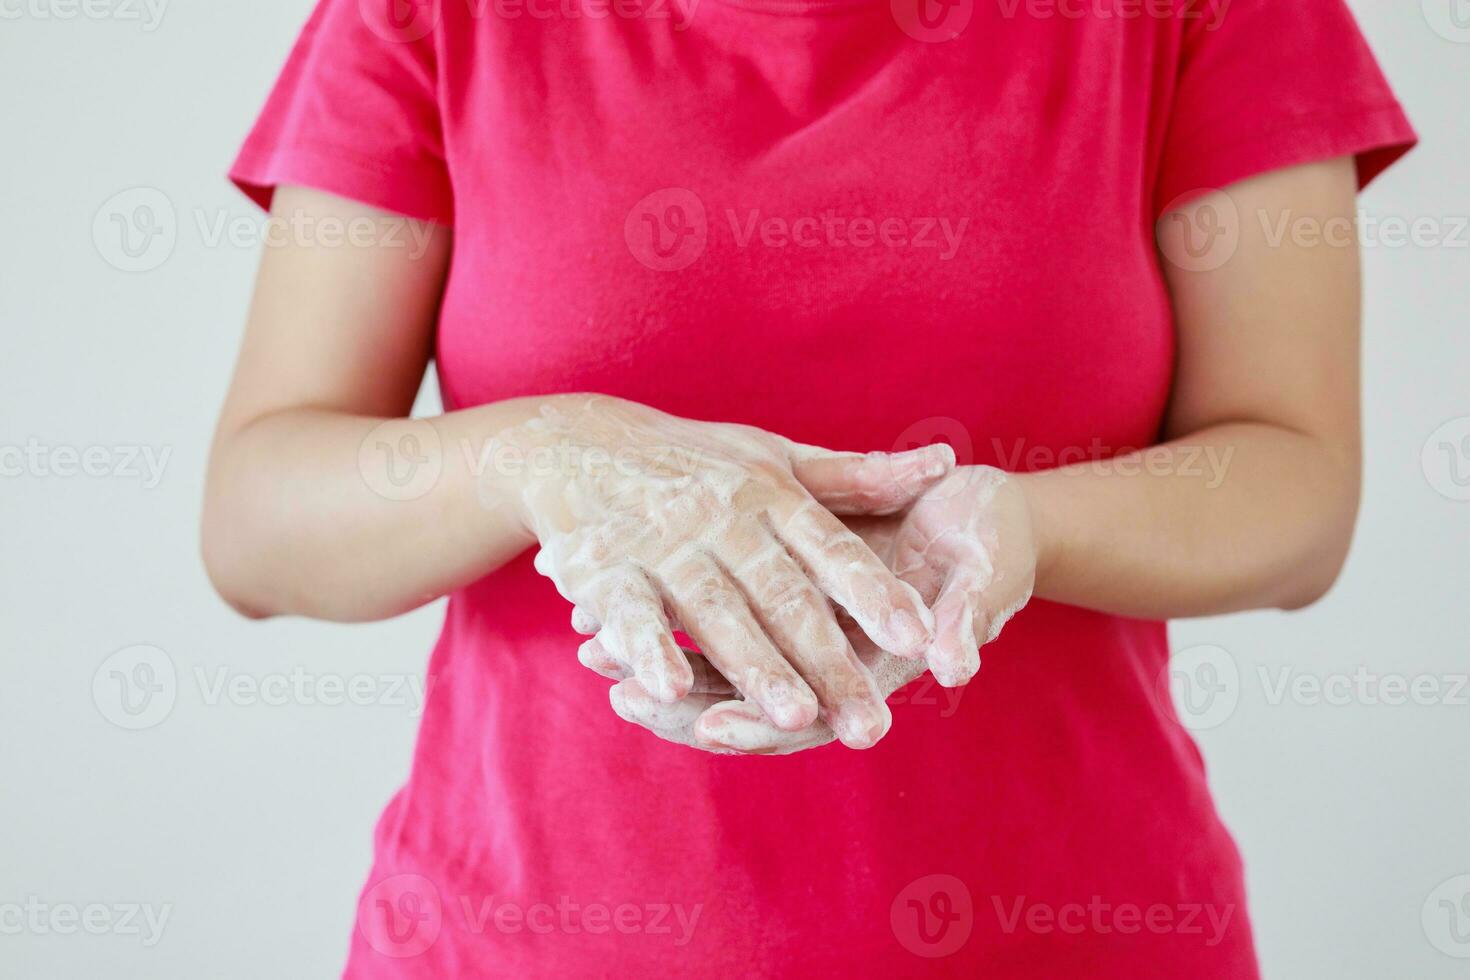 mulher lavando as mãos com sabão para o conceito de prevenção do vírus corona covid-19 foto